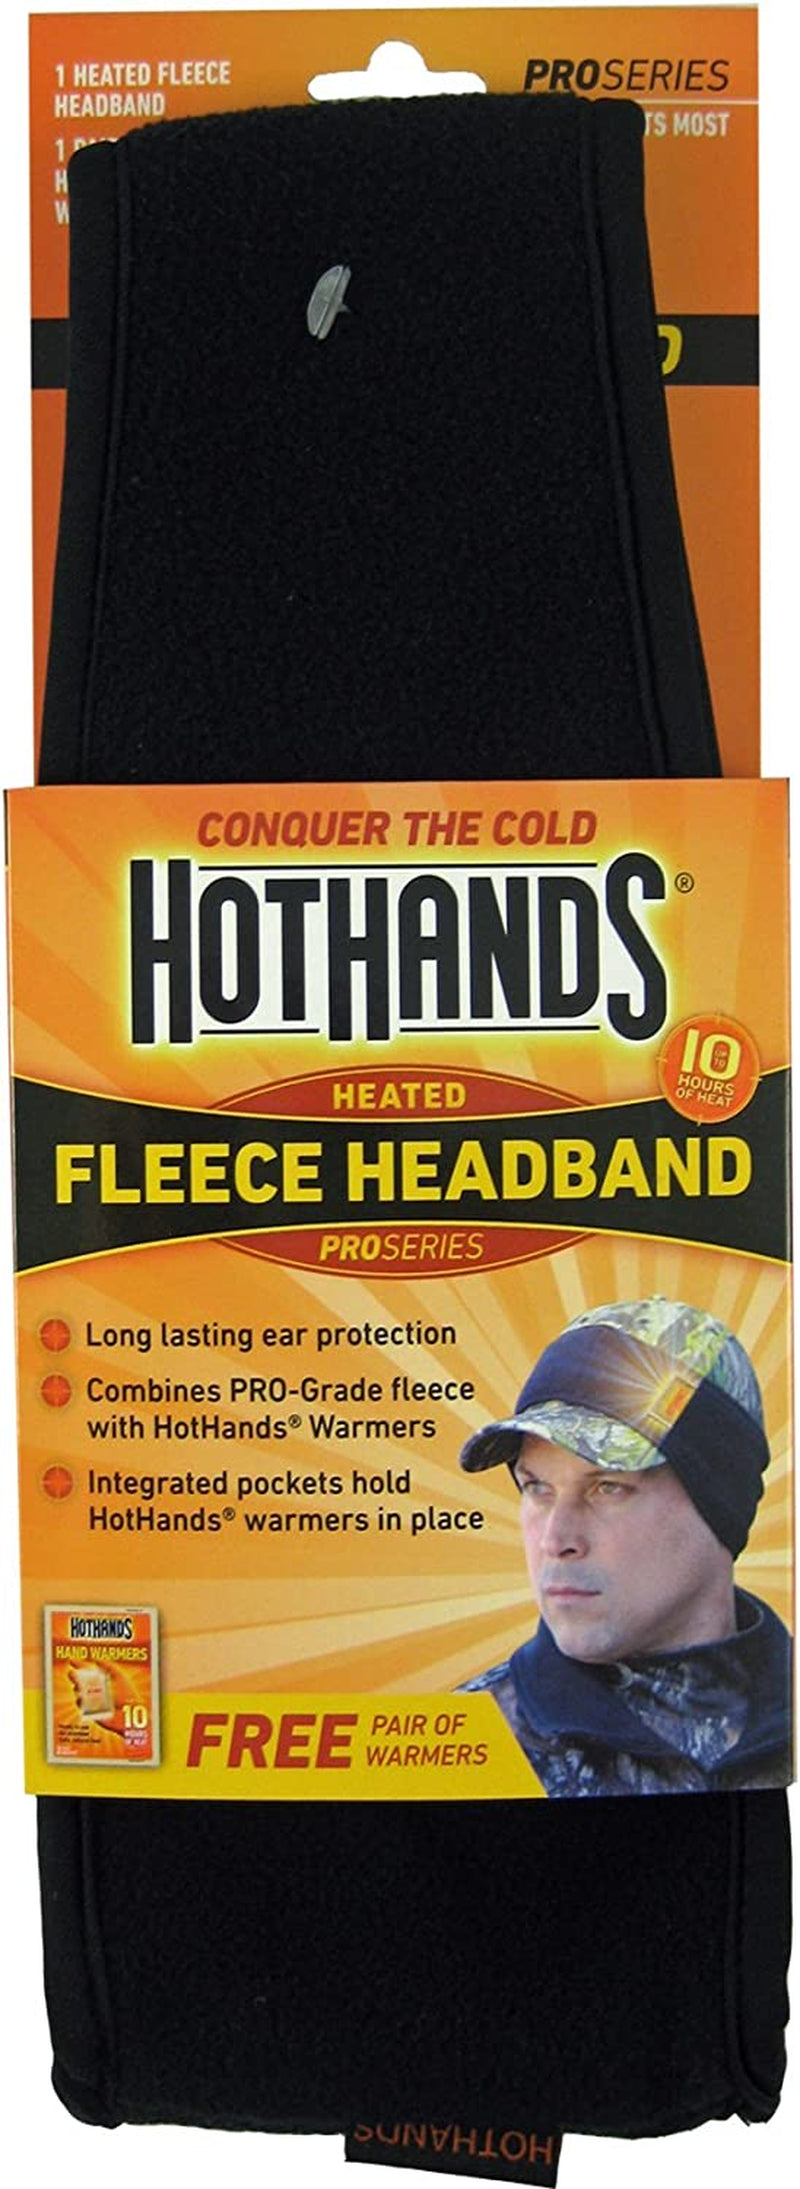 Hothands Heated Fleece Headband